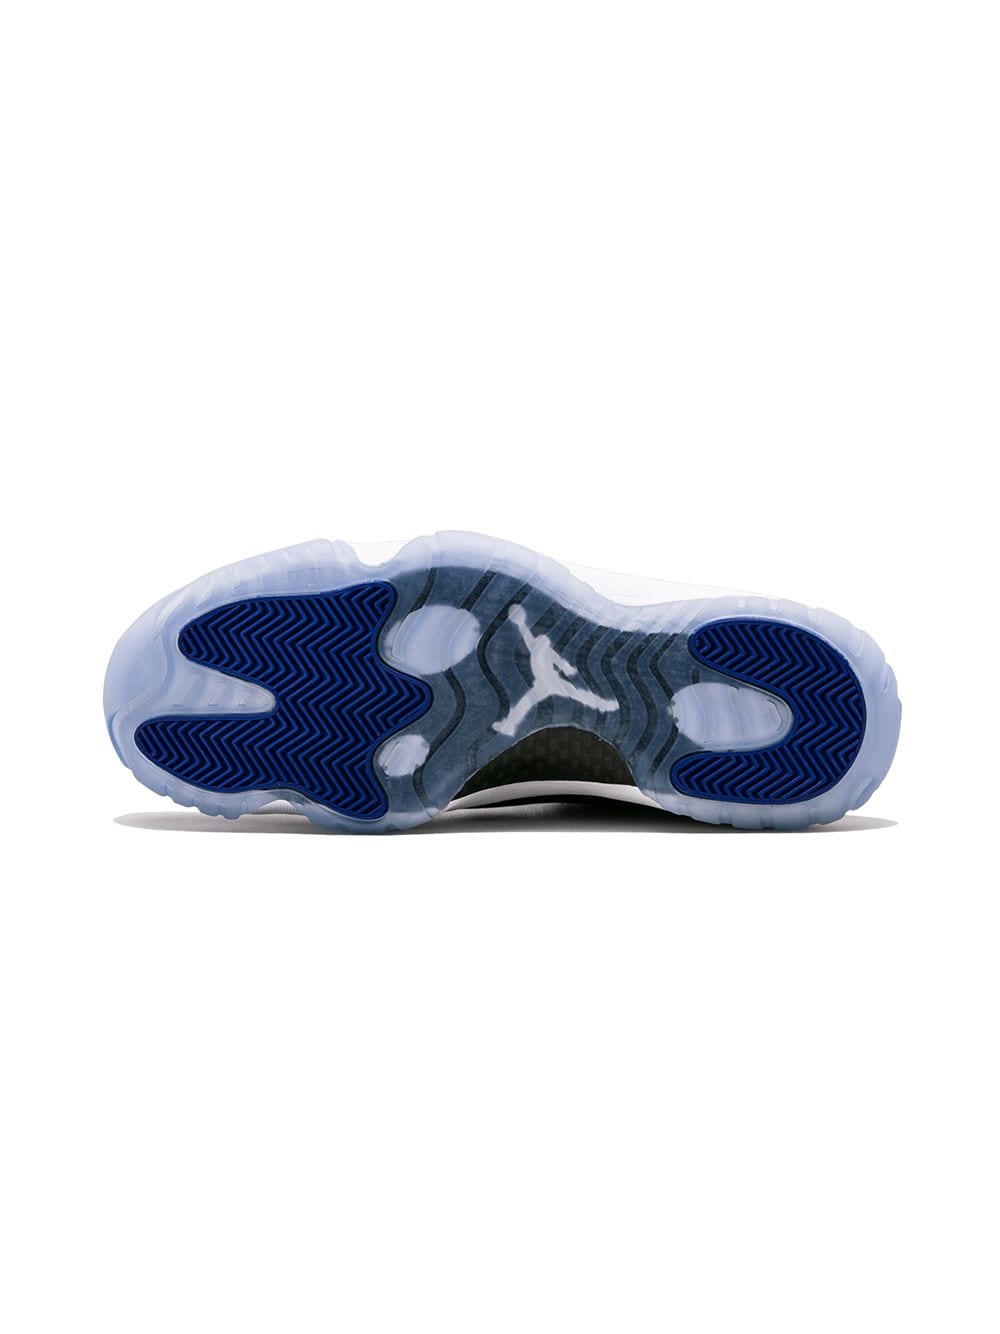 Louis Vuitton blue Air Jordan 11 shoes - LIMITED EDITION